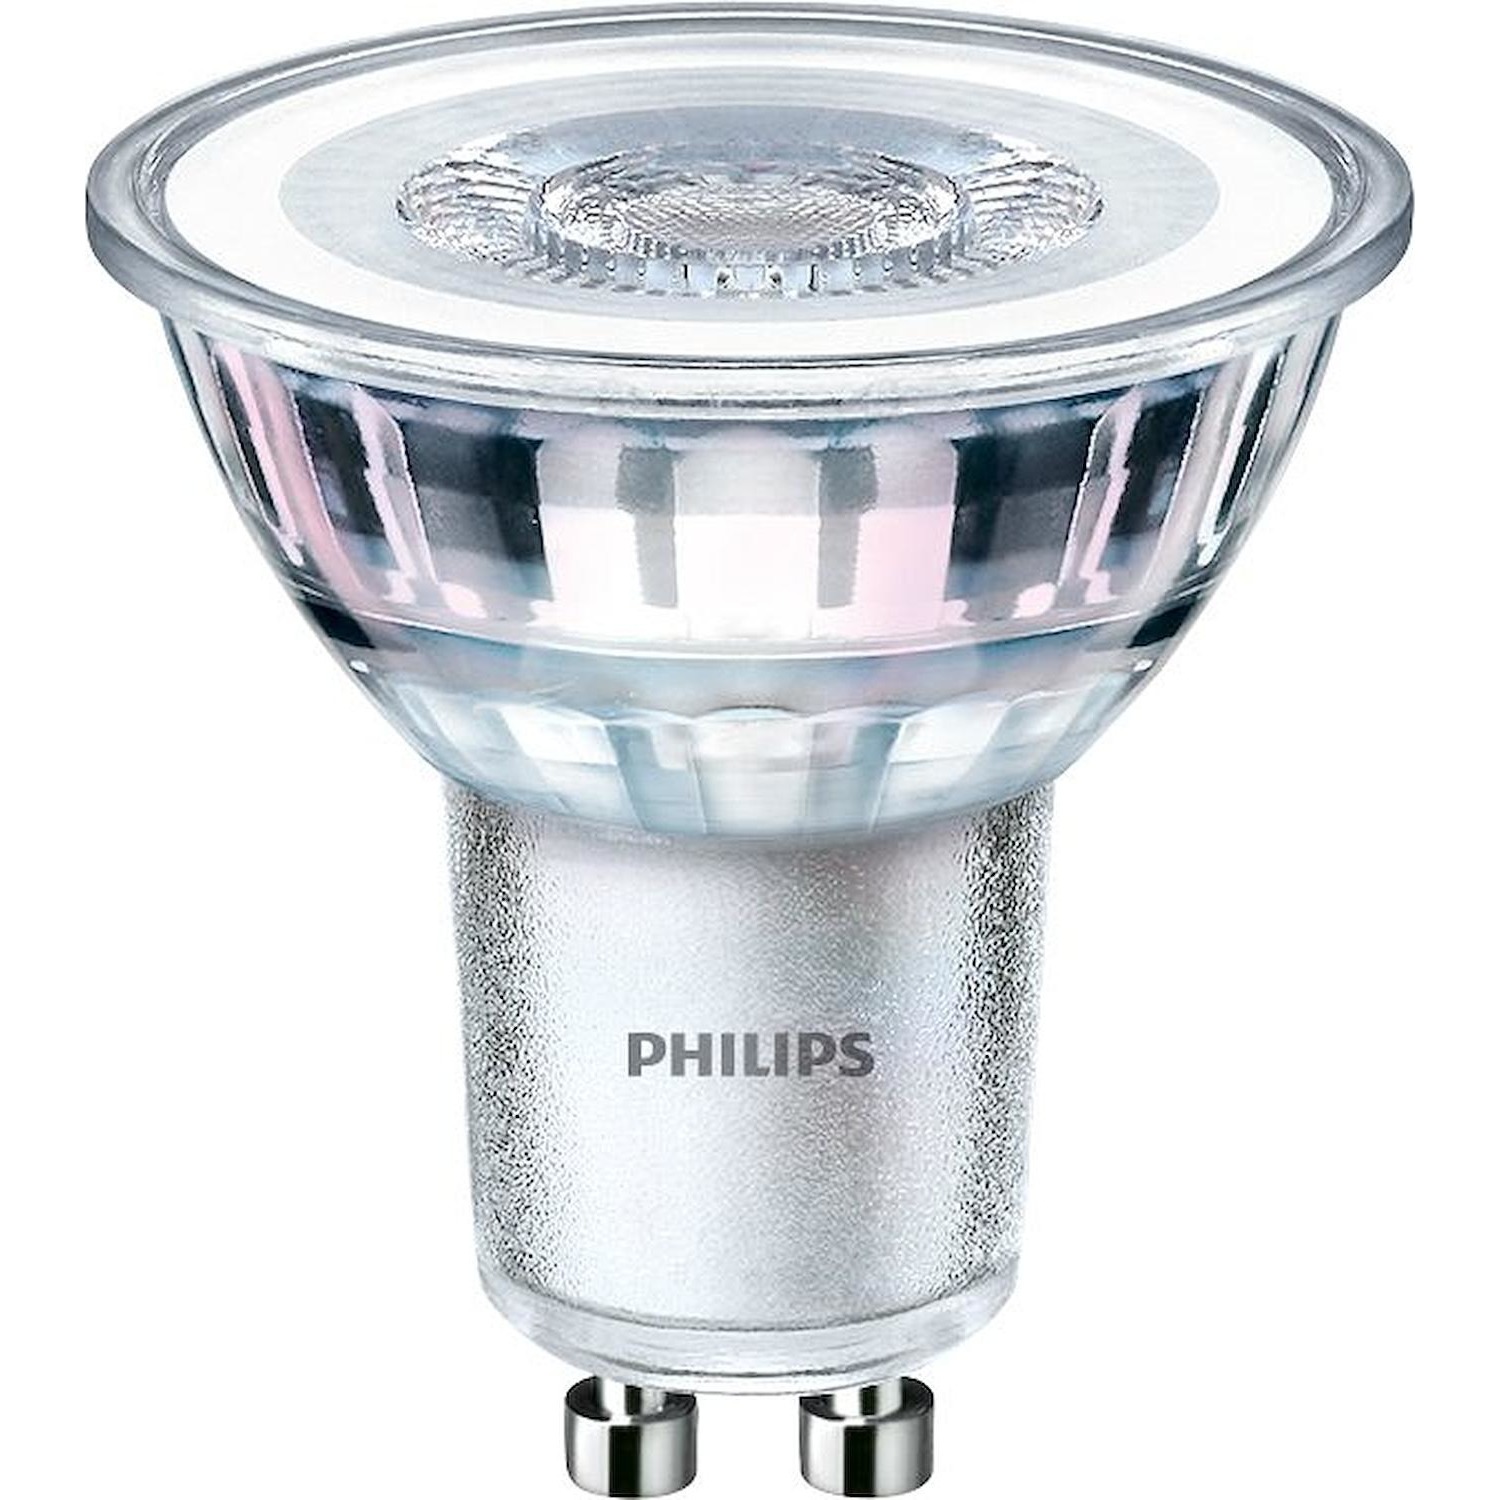 Immagine per Lampadina faretto Philips LED GU10 50W CLD da DIMOStore